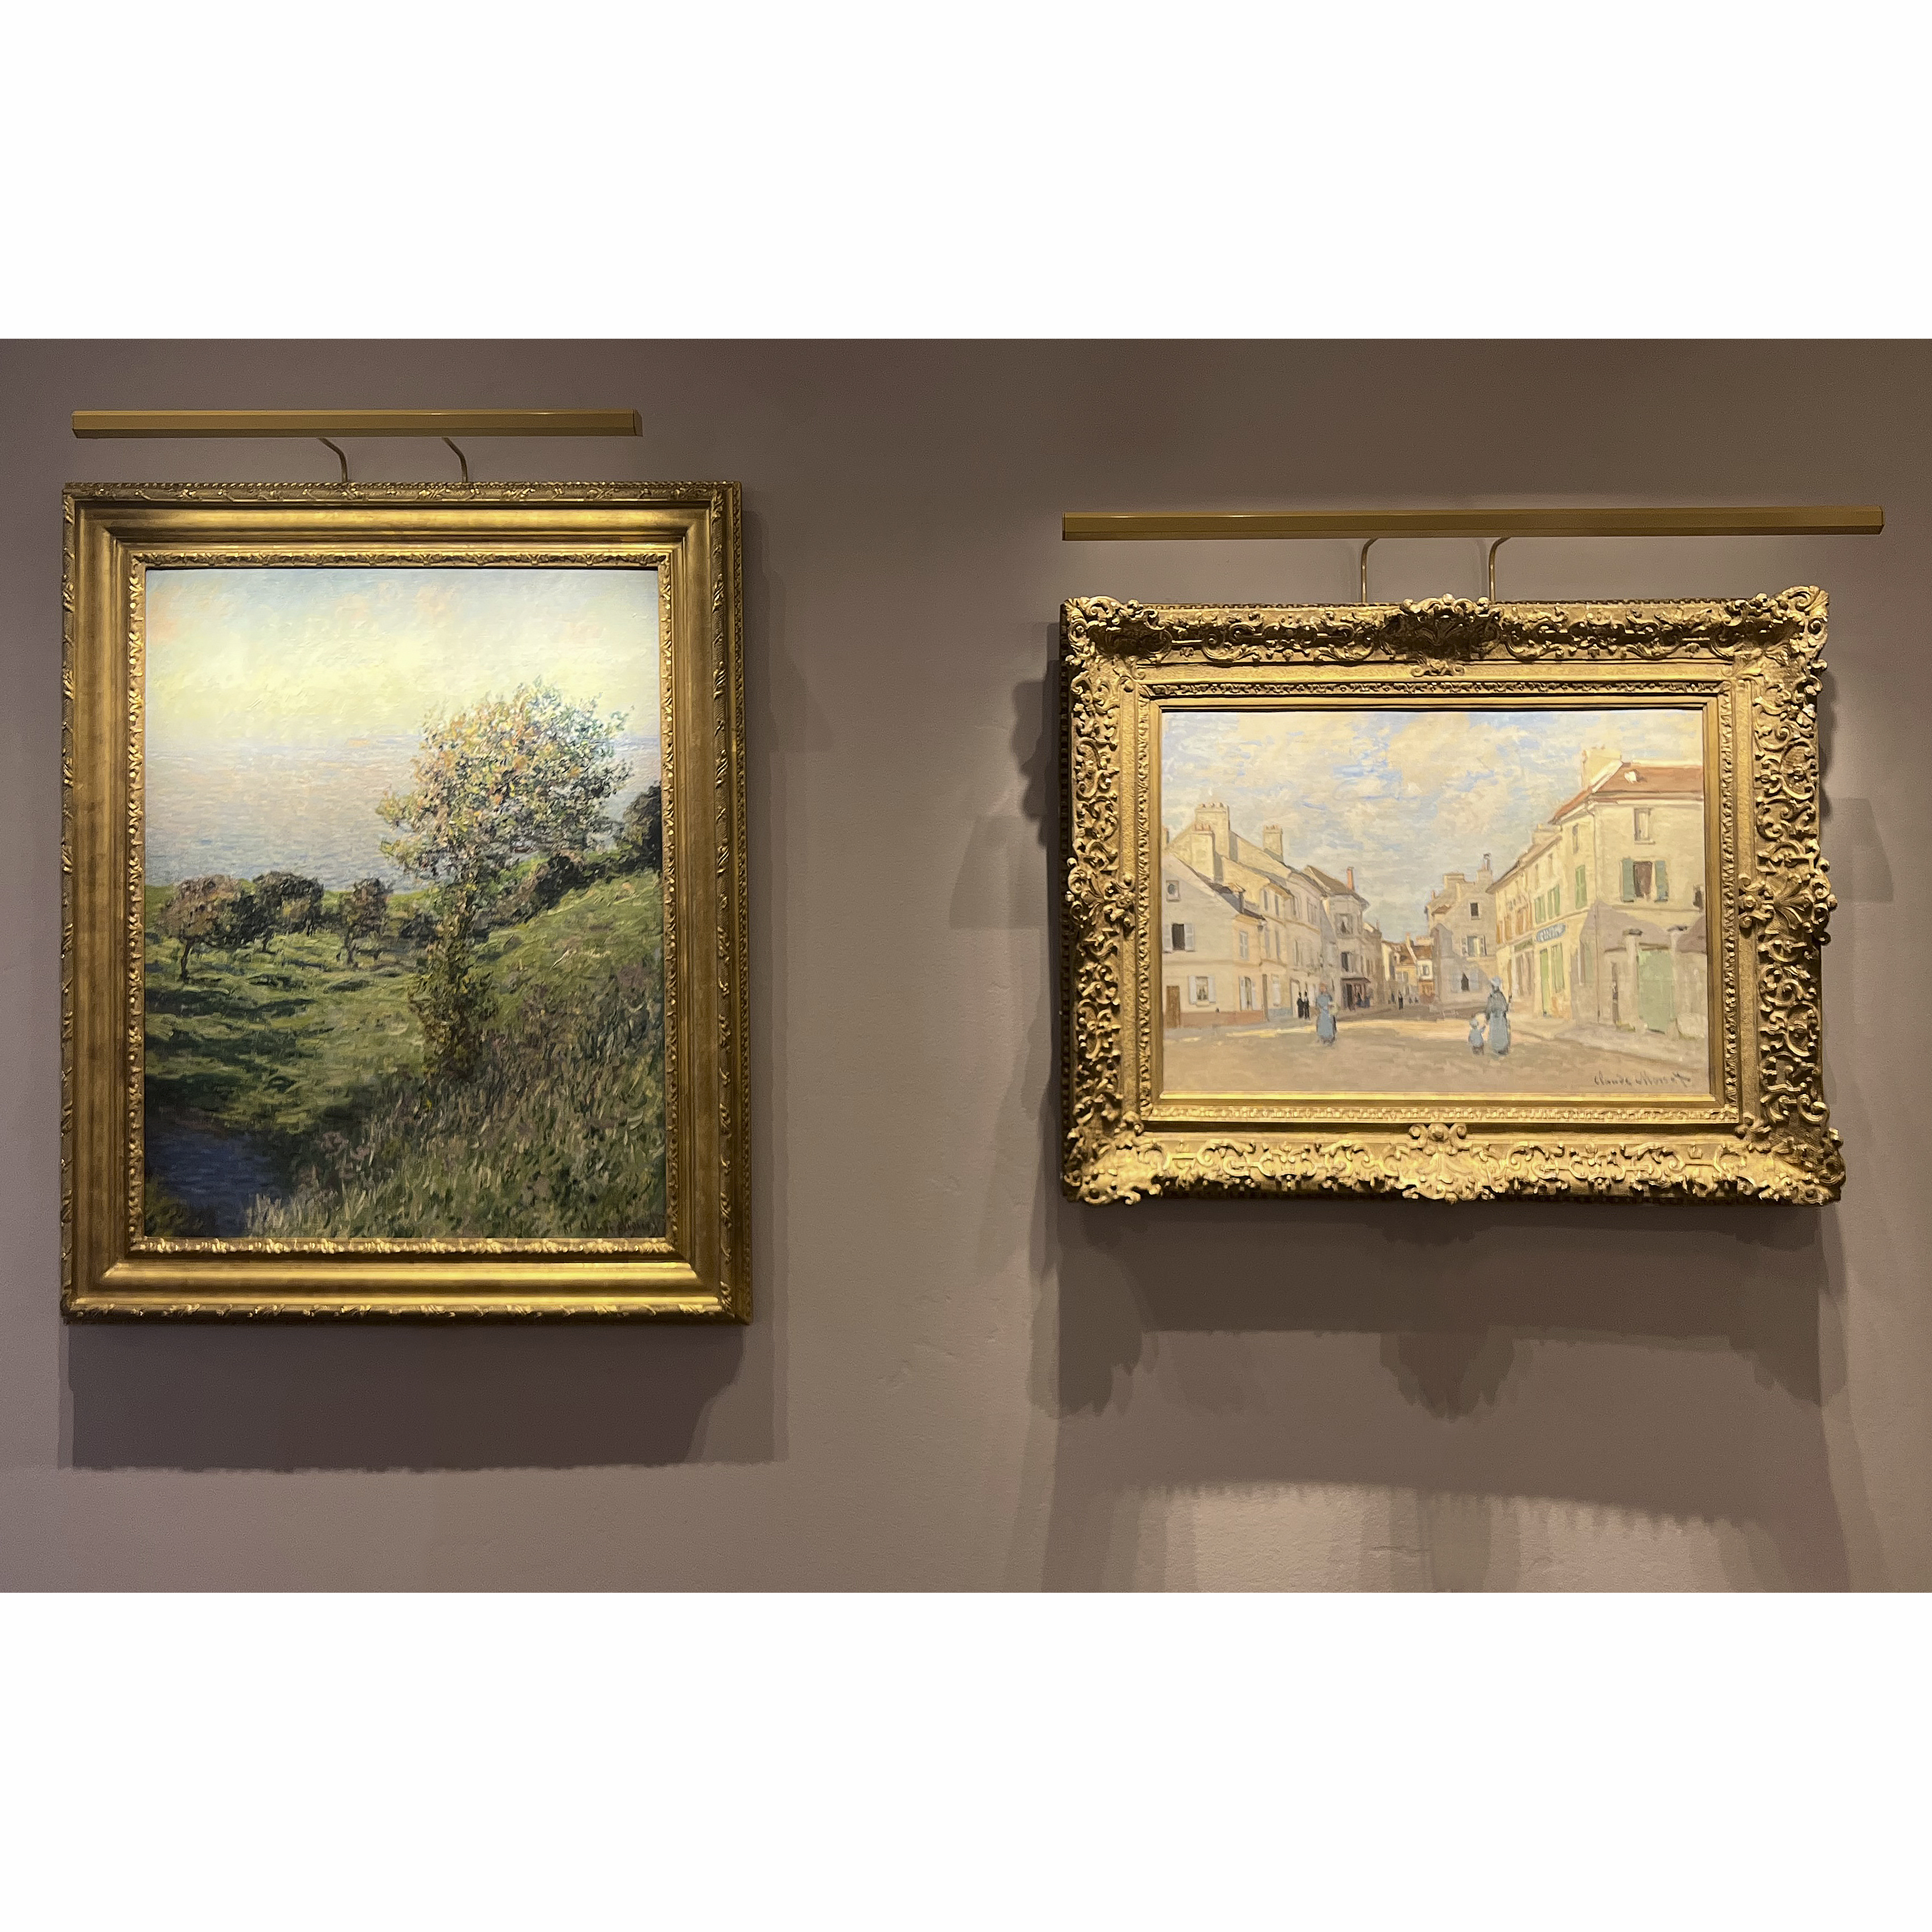 Claude Monet: An Impressionist Genius